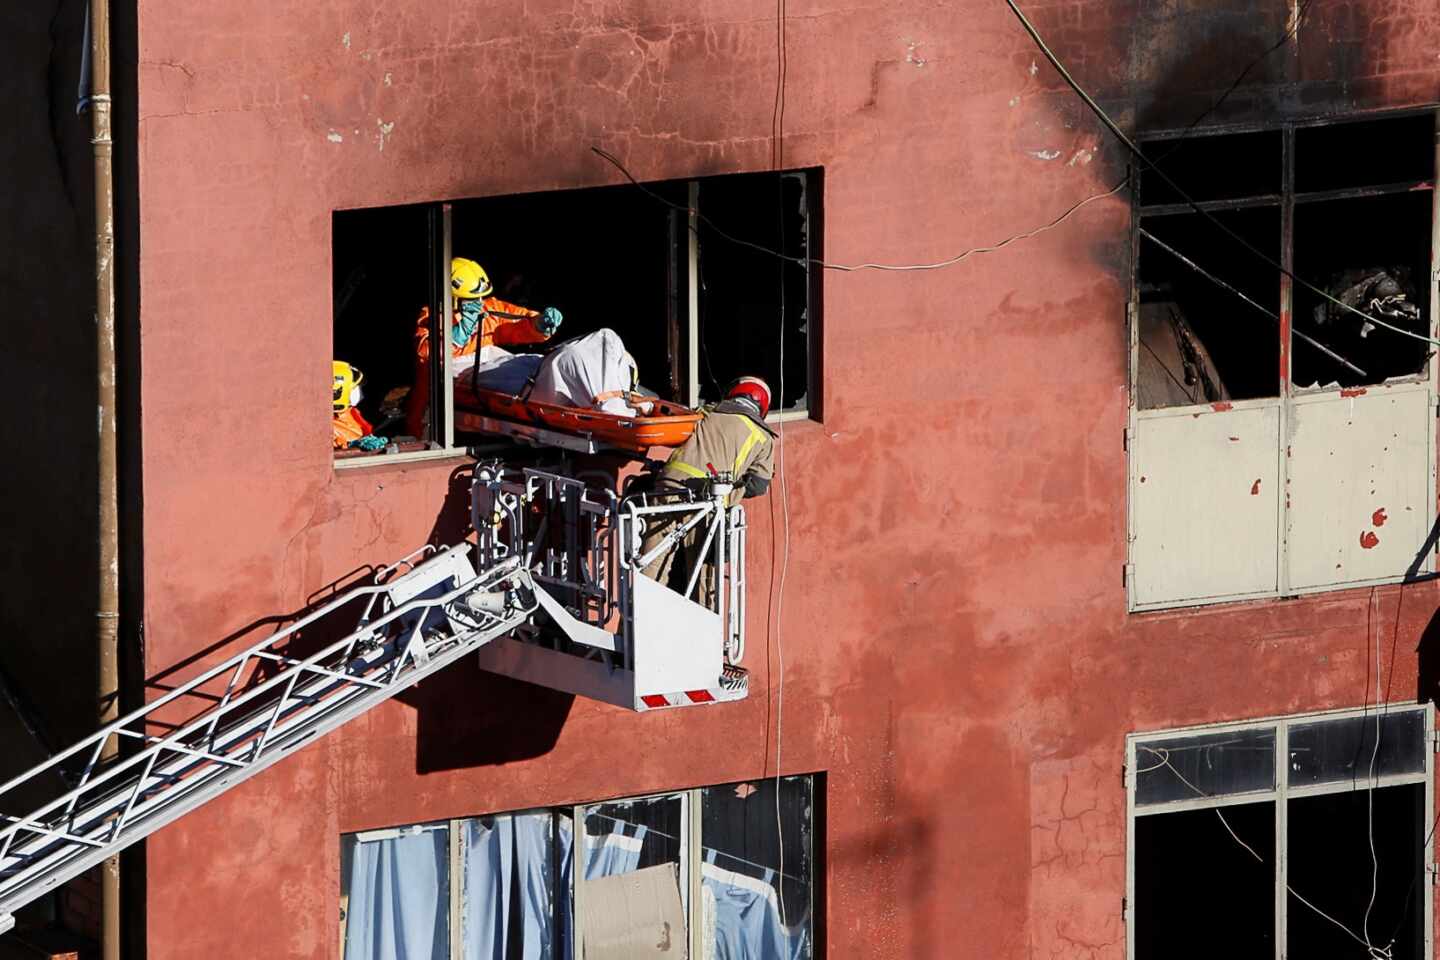 Cataluña transfiere 750.000 euros a Badalona para ayudar a los afectados por el incendio